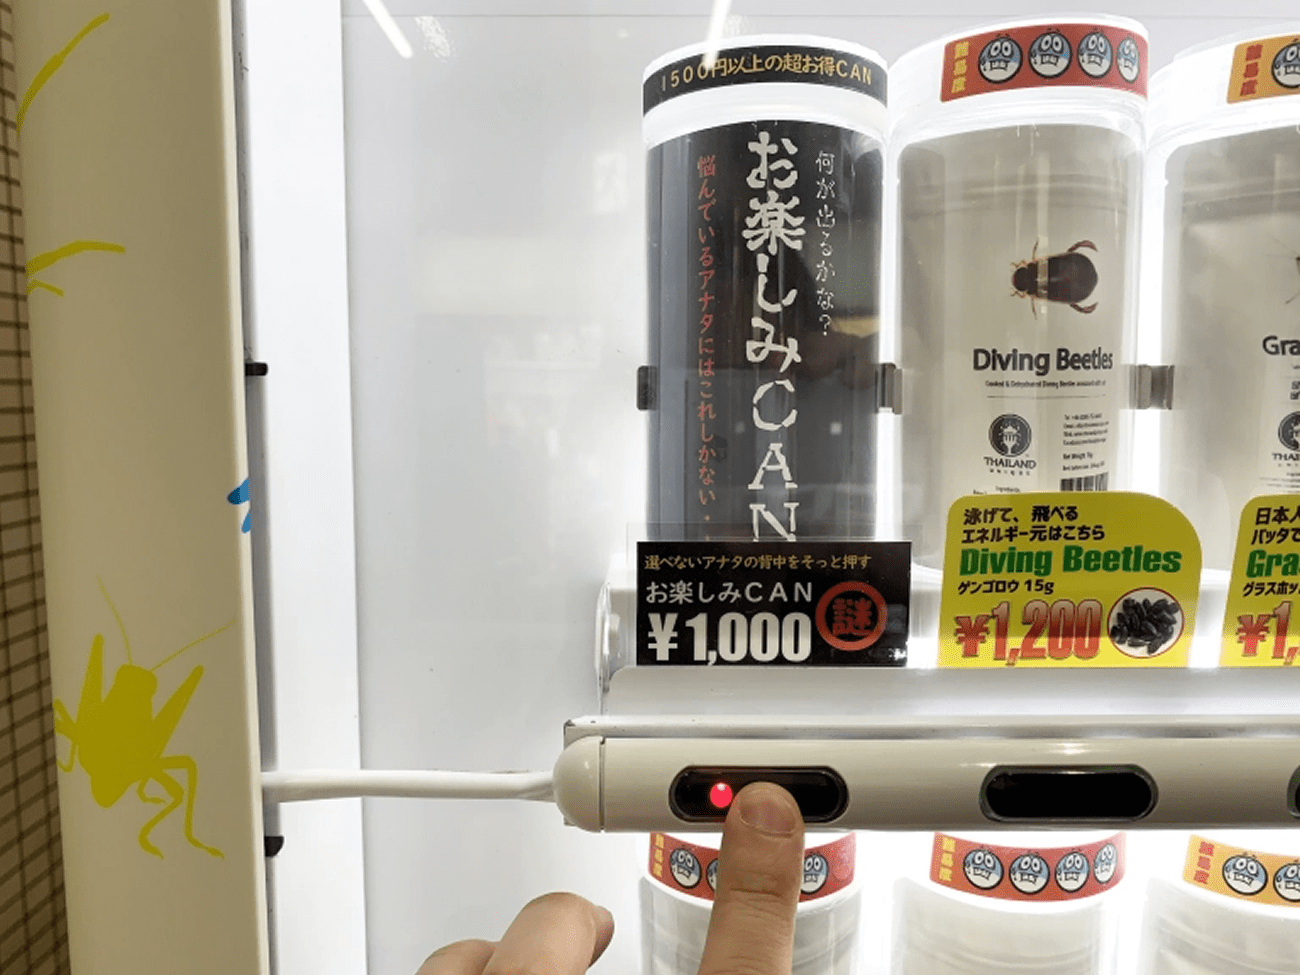 Teste da máquina de venda automática de insetos comestíveis de Tóquio